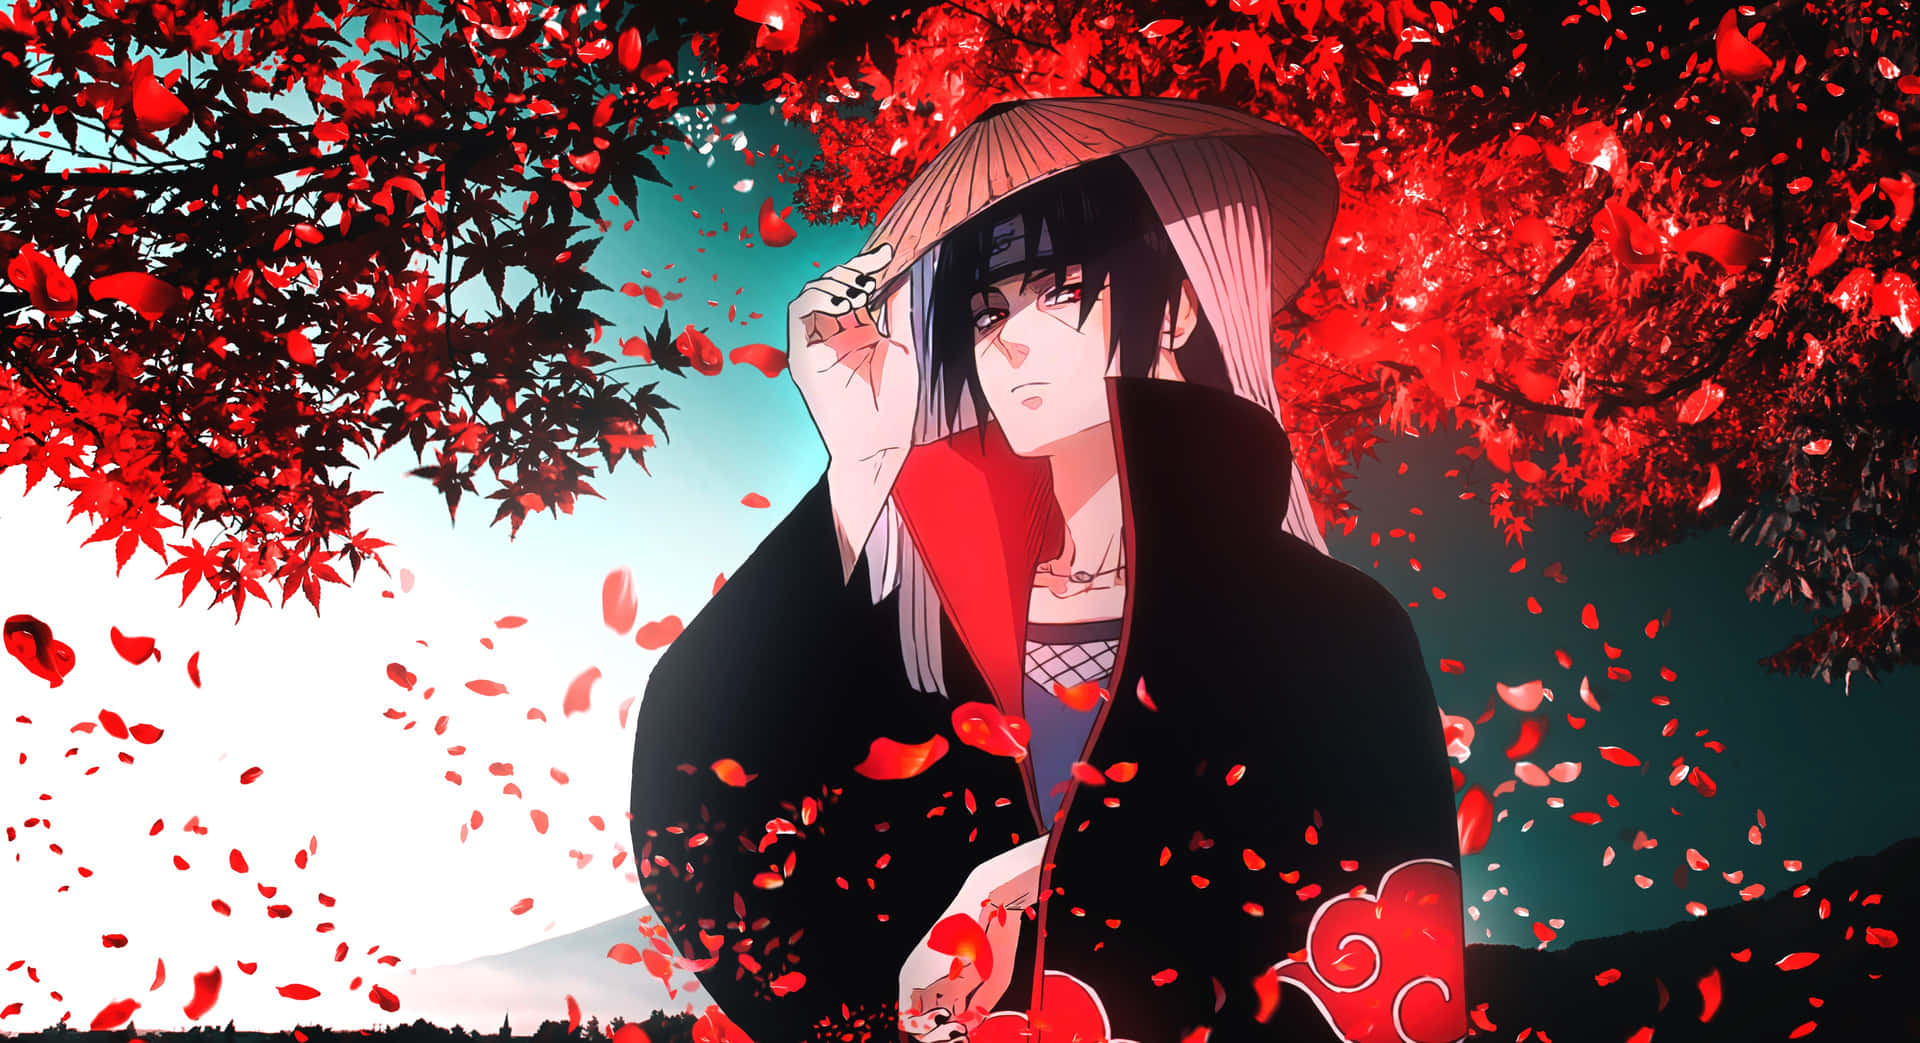 En pige iført en rød kimono står midt i et felt af blomster. Wallpaper